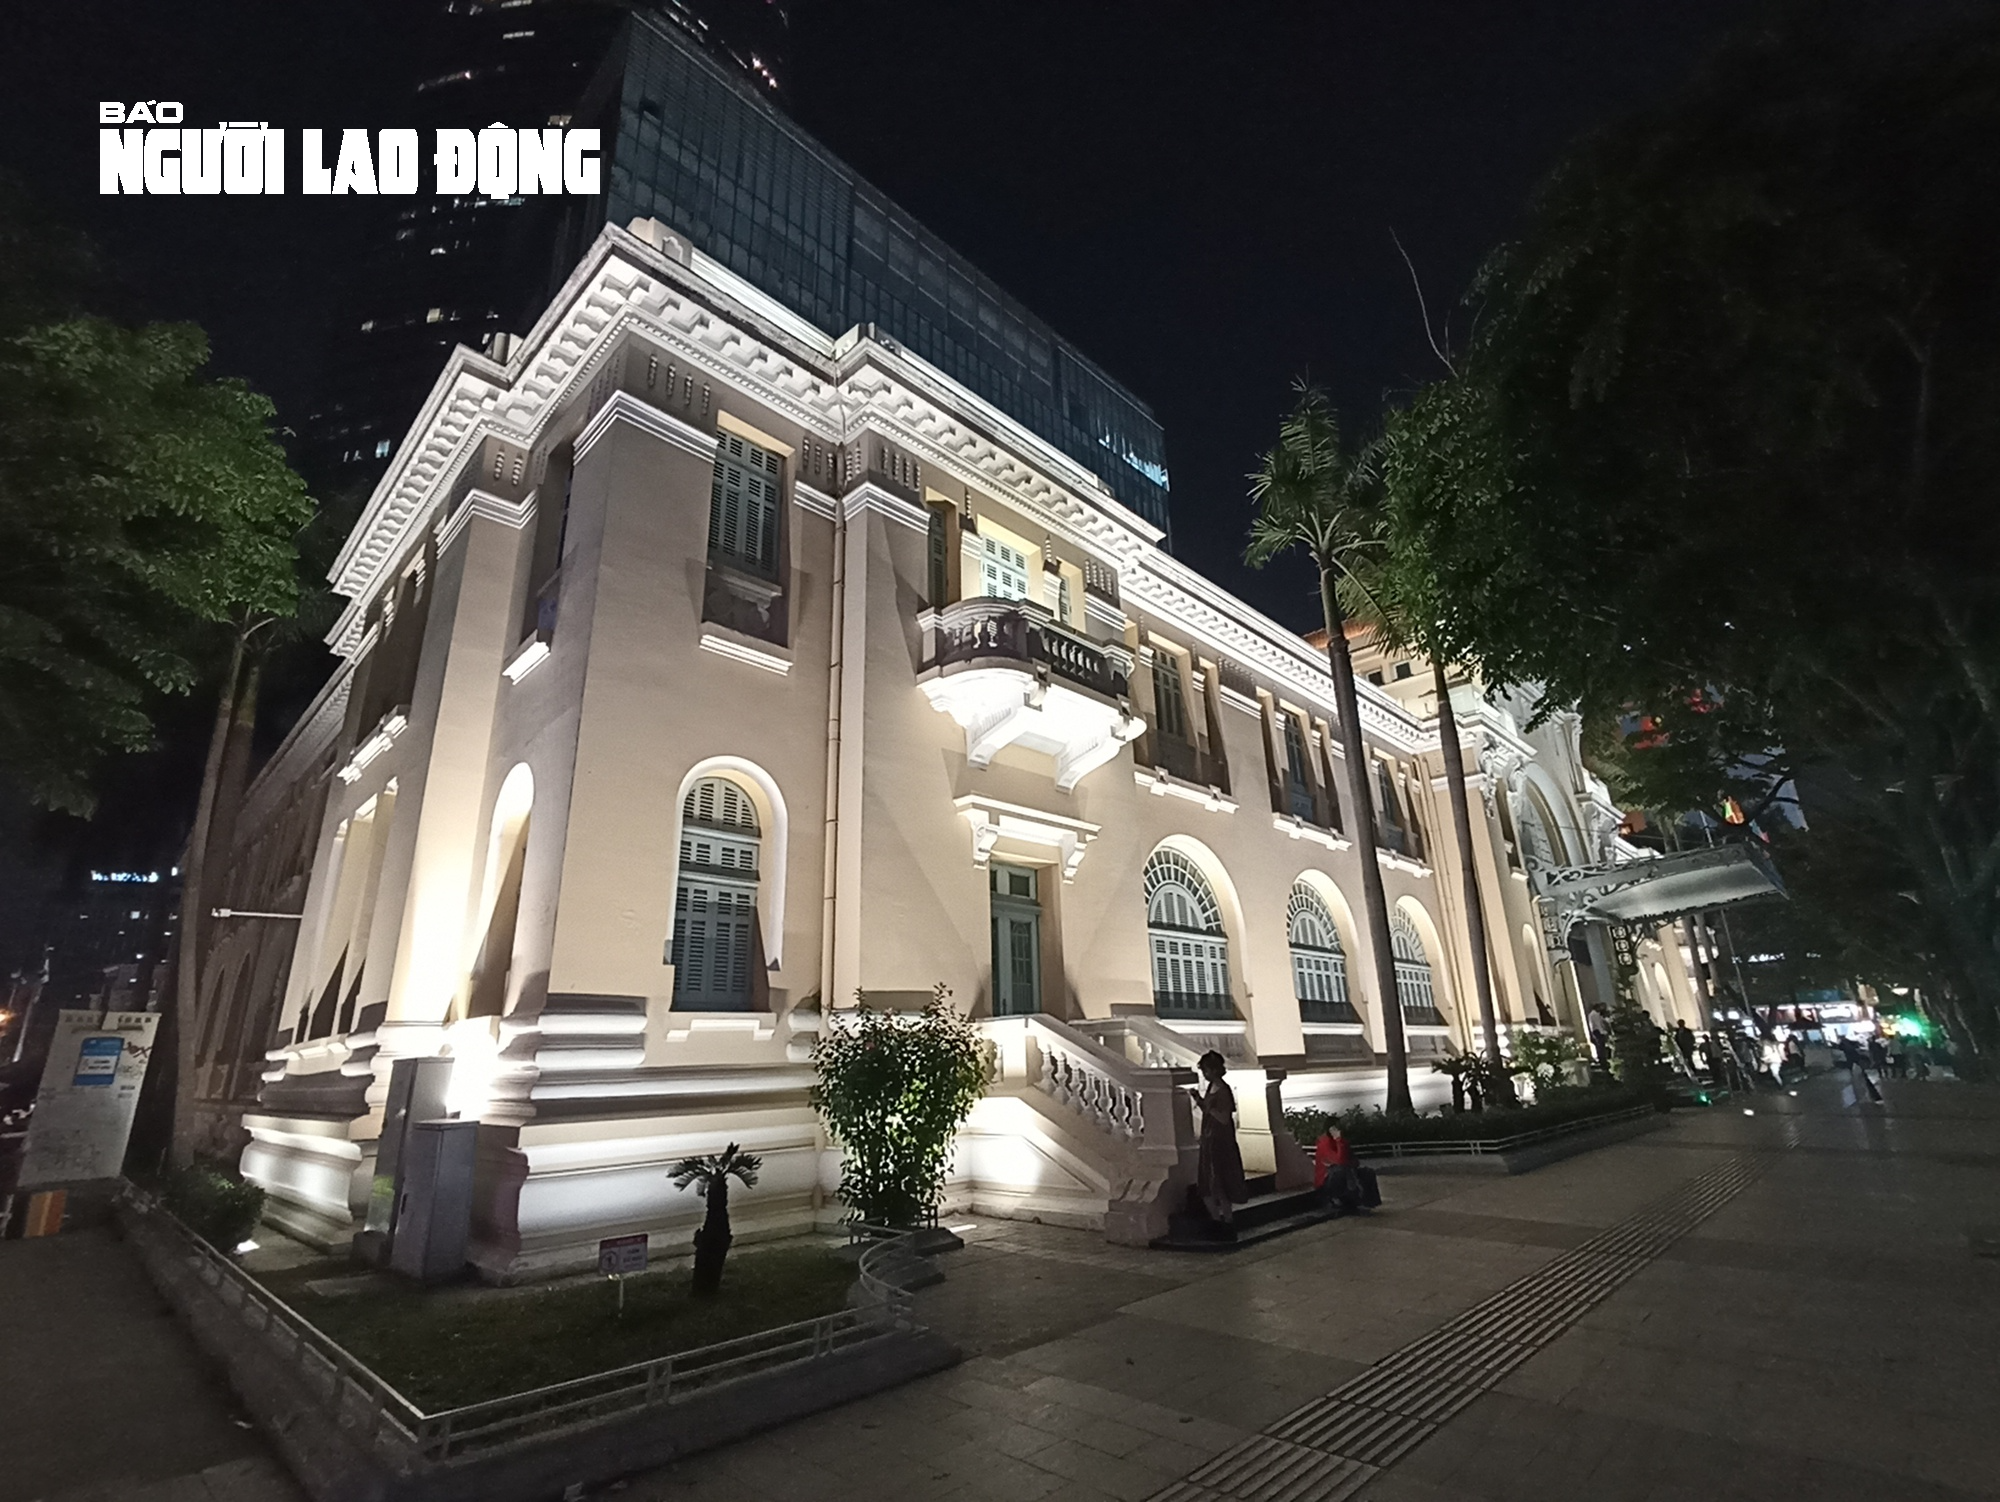 Khánh thành Công trình chiếu sáng mỹ thuật tòa nhà Kho bạc Nhà nước TP HCM - Ảnh 7.